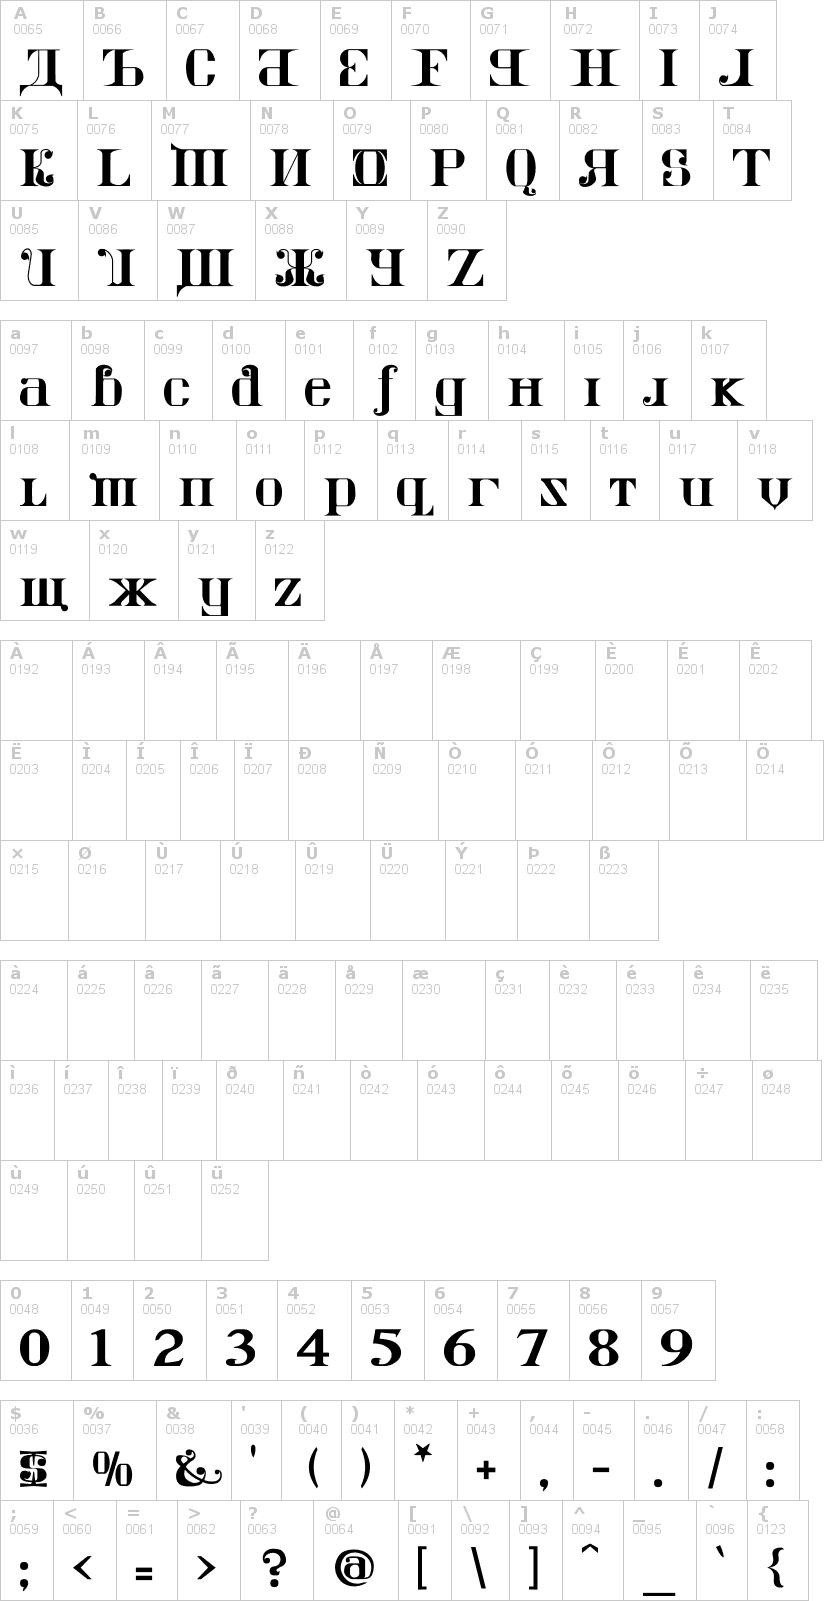 Lettere dell'alfabeto del font kremlin-imperial con le quali è possibile realizzare adesivi prespaziati